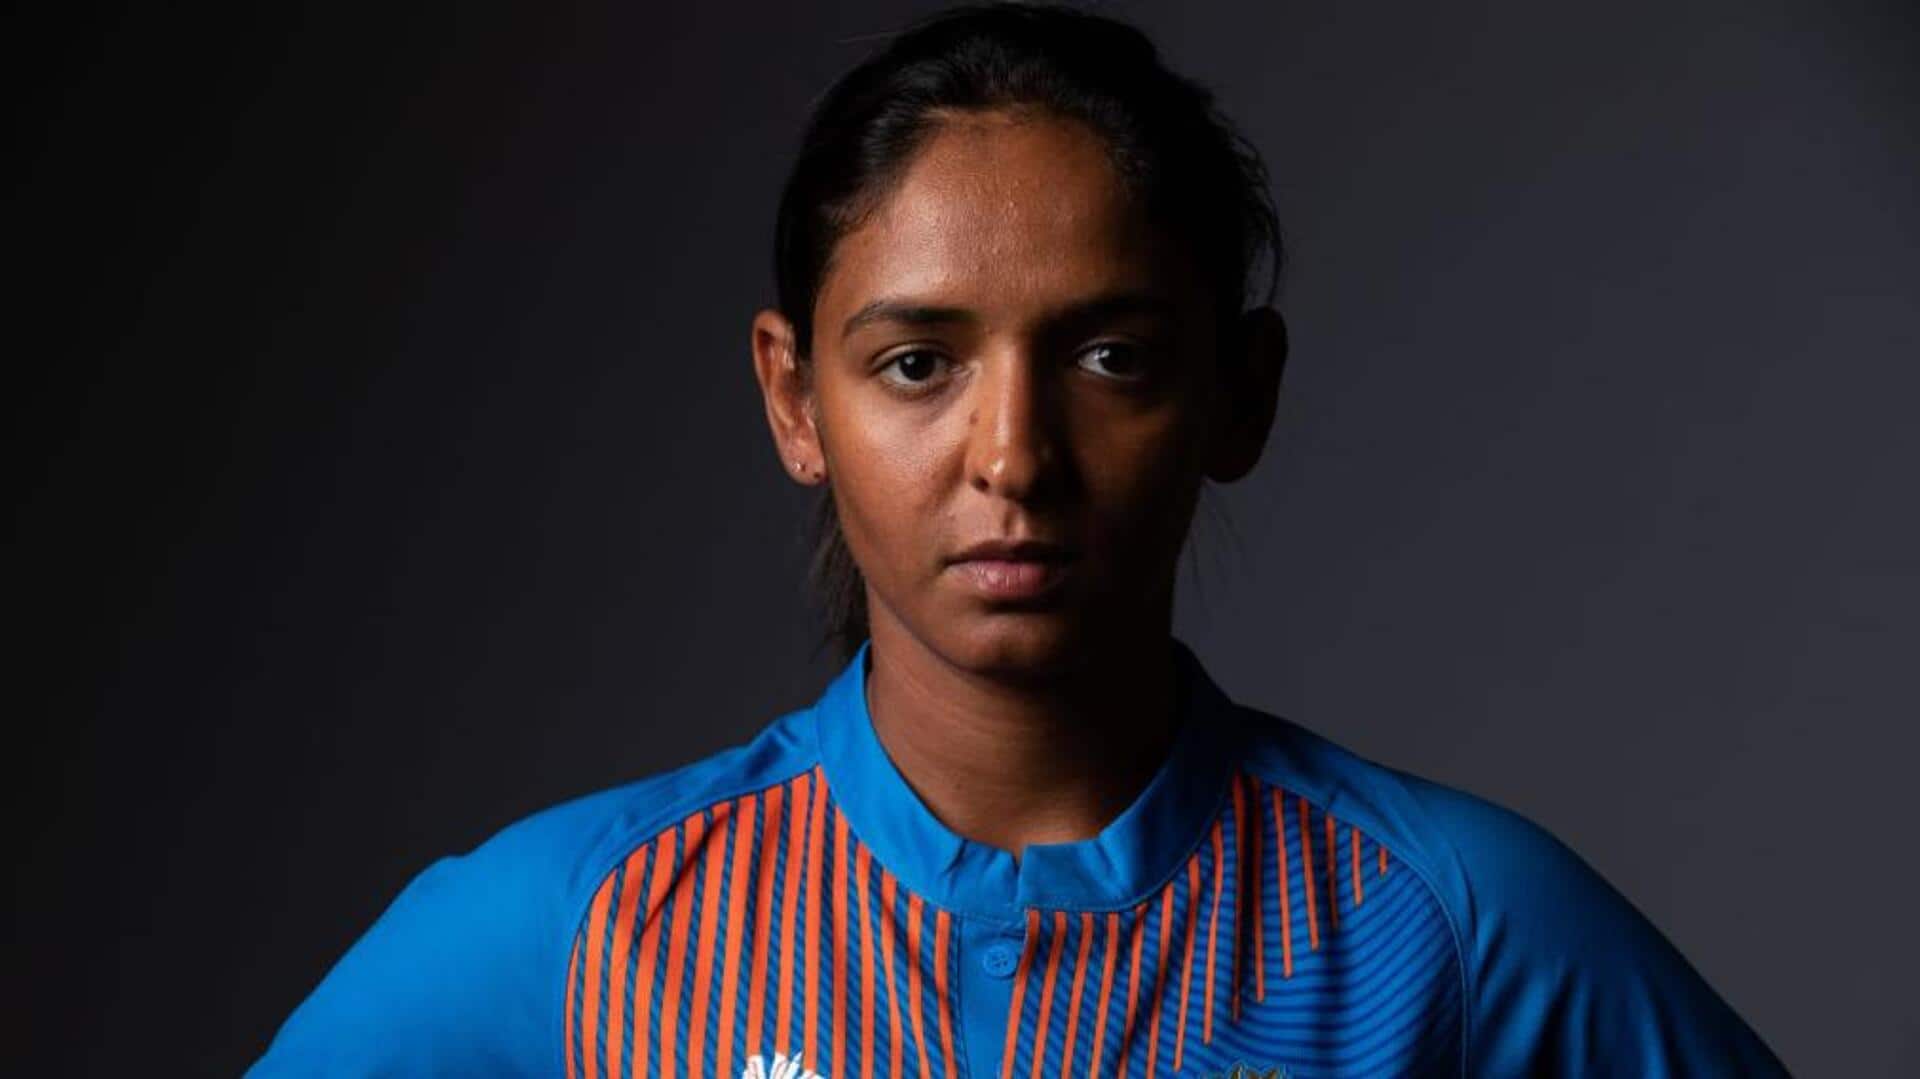 हरमनप्रीत कौर 2 मैचों के लिए निलंबित, लेवल-2 के तहत सजा पाने वाली पहली महिला क्रिकेटर